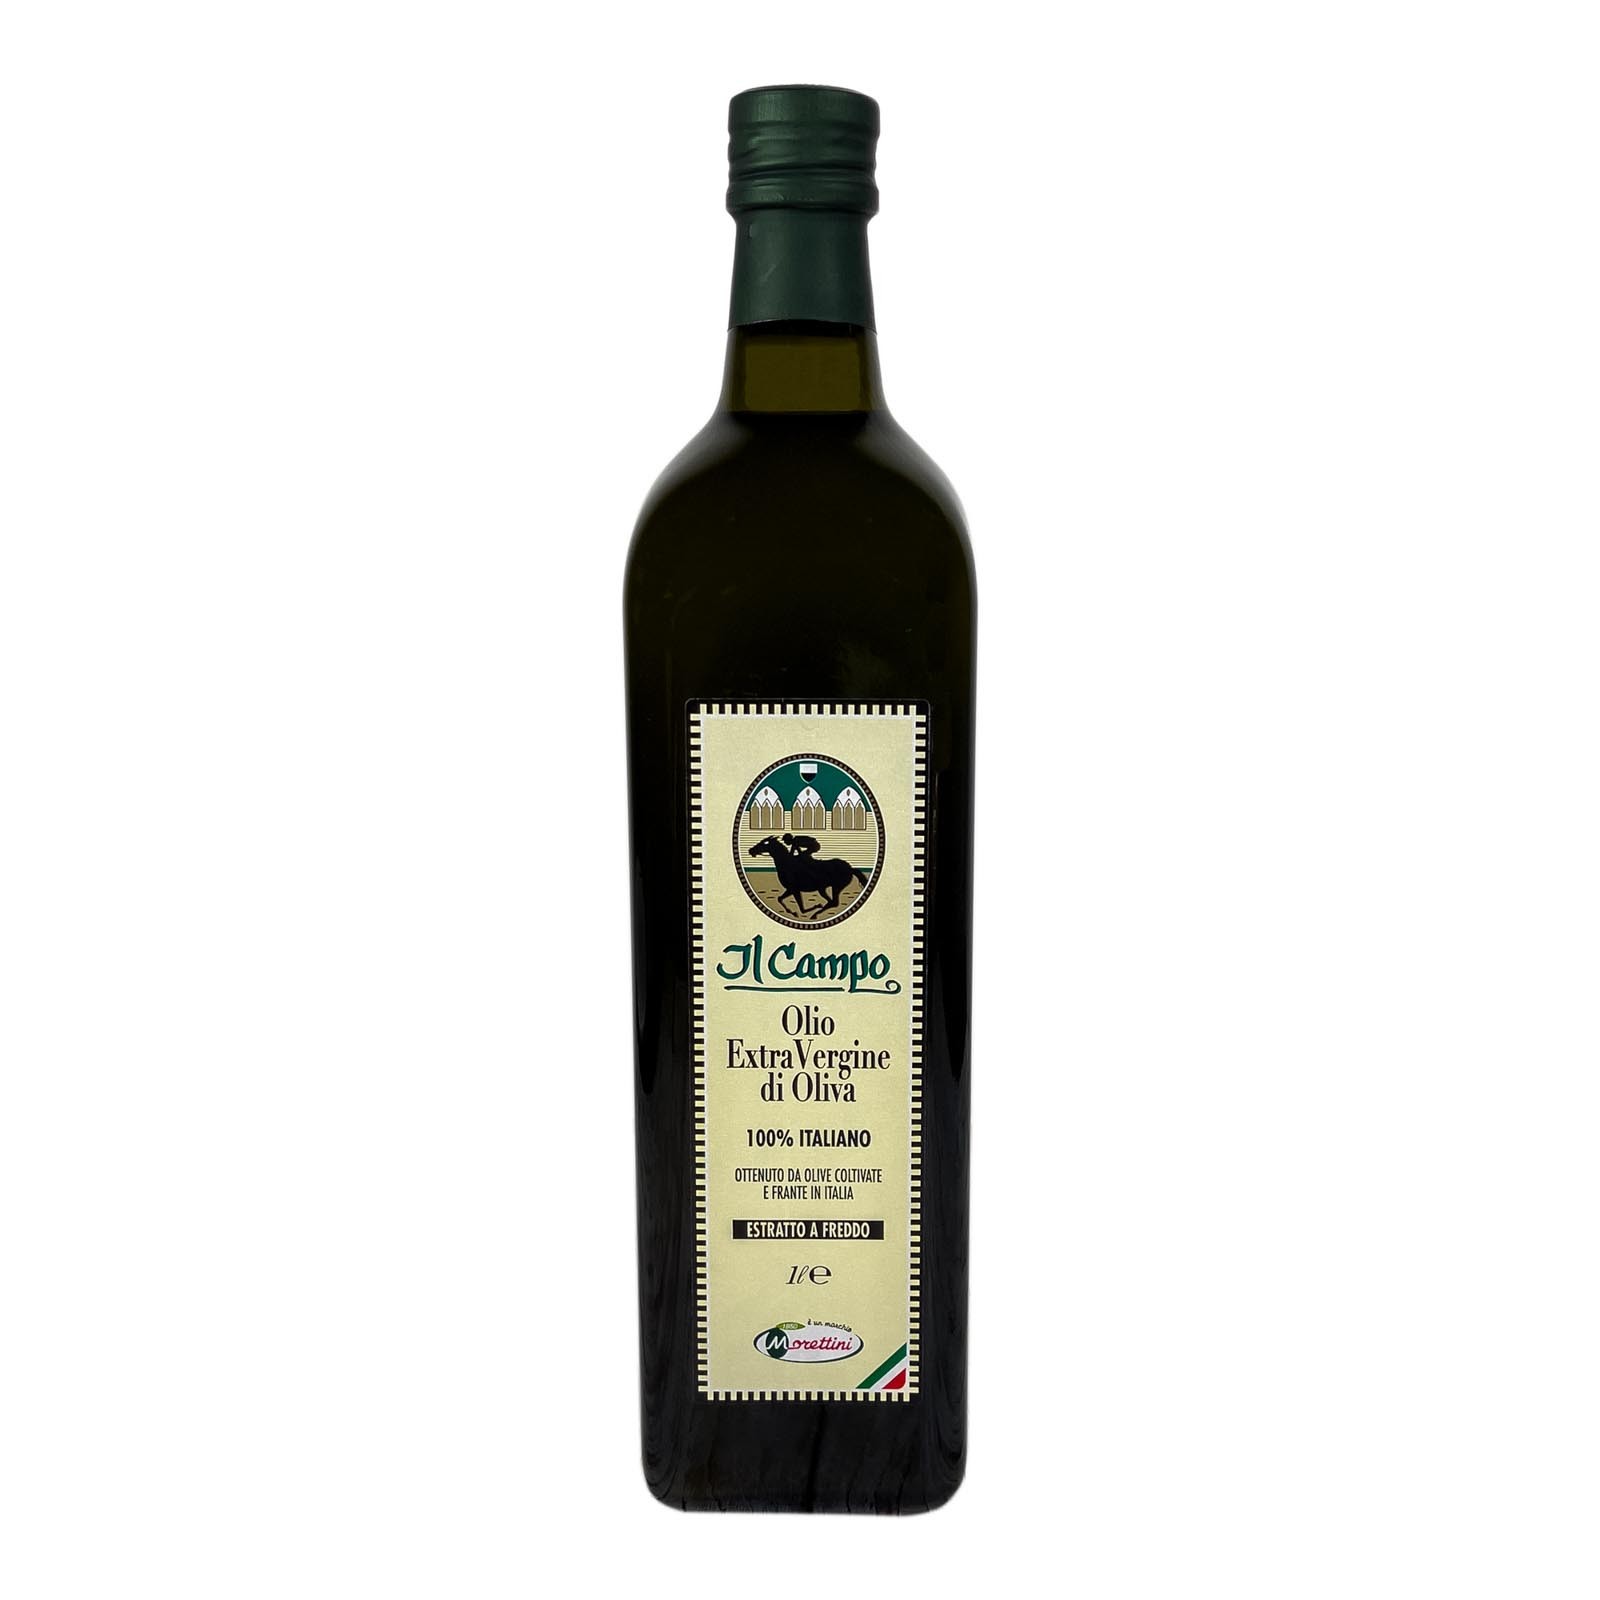 Il Campo 100% italiano, olio extra vergine di oliva, prodotto con il metodo della lavorazione a freddo di olive raccolte e frante in Italia - Anno di produzione 2022/2023.